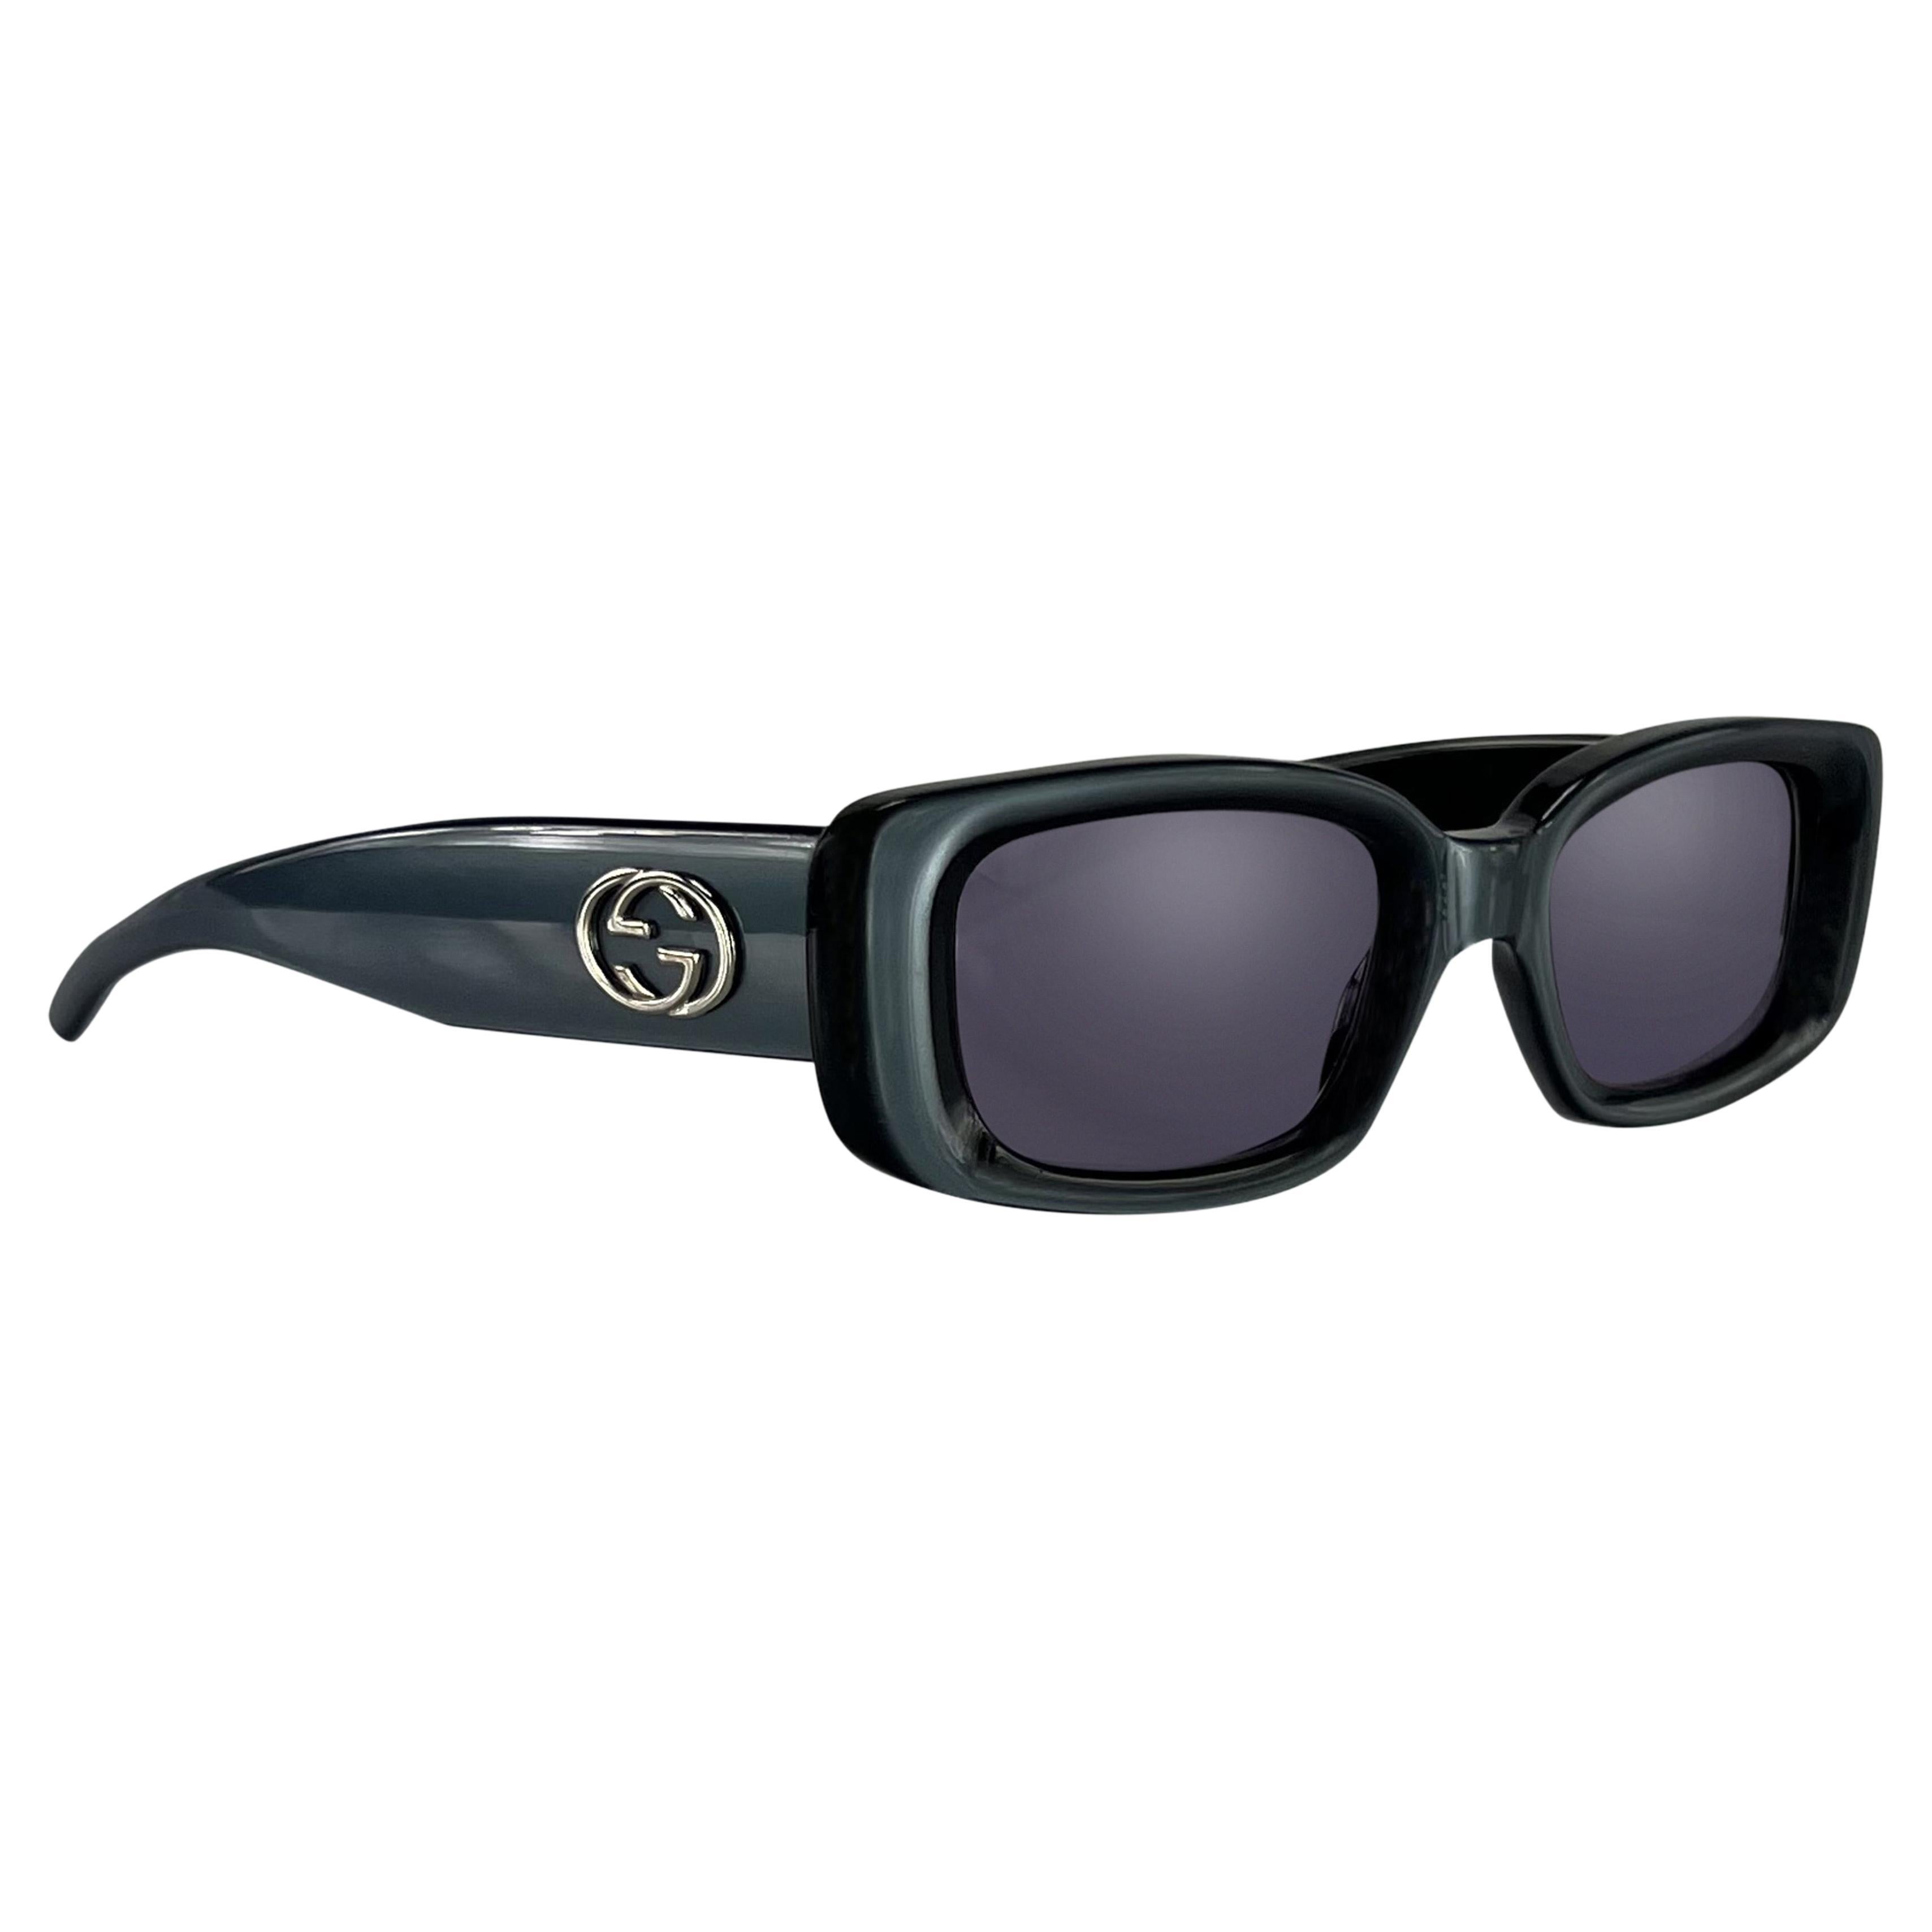 S/S 1997 Gucci for Tom Ford Anzeige Blau Metallic GG Logo Rechteckige Sonnenbrille im Angebot